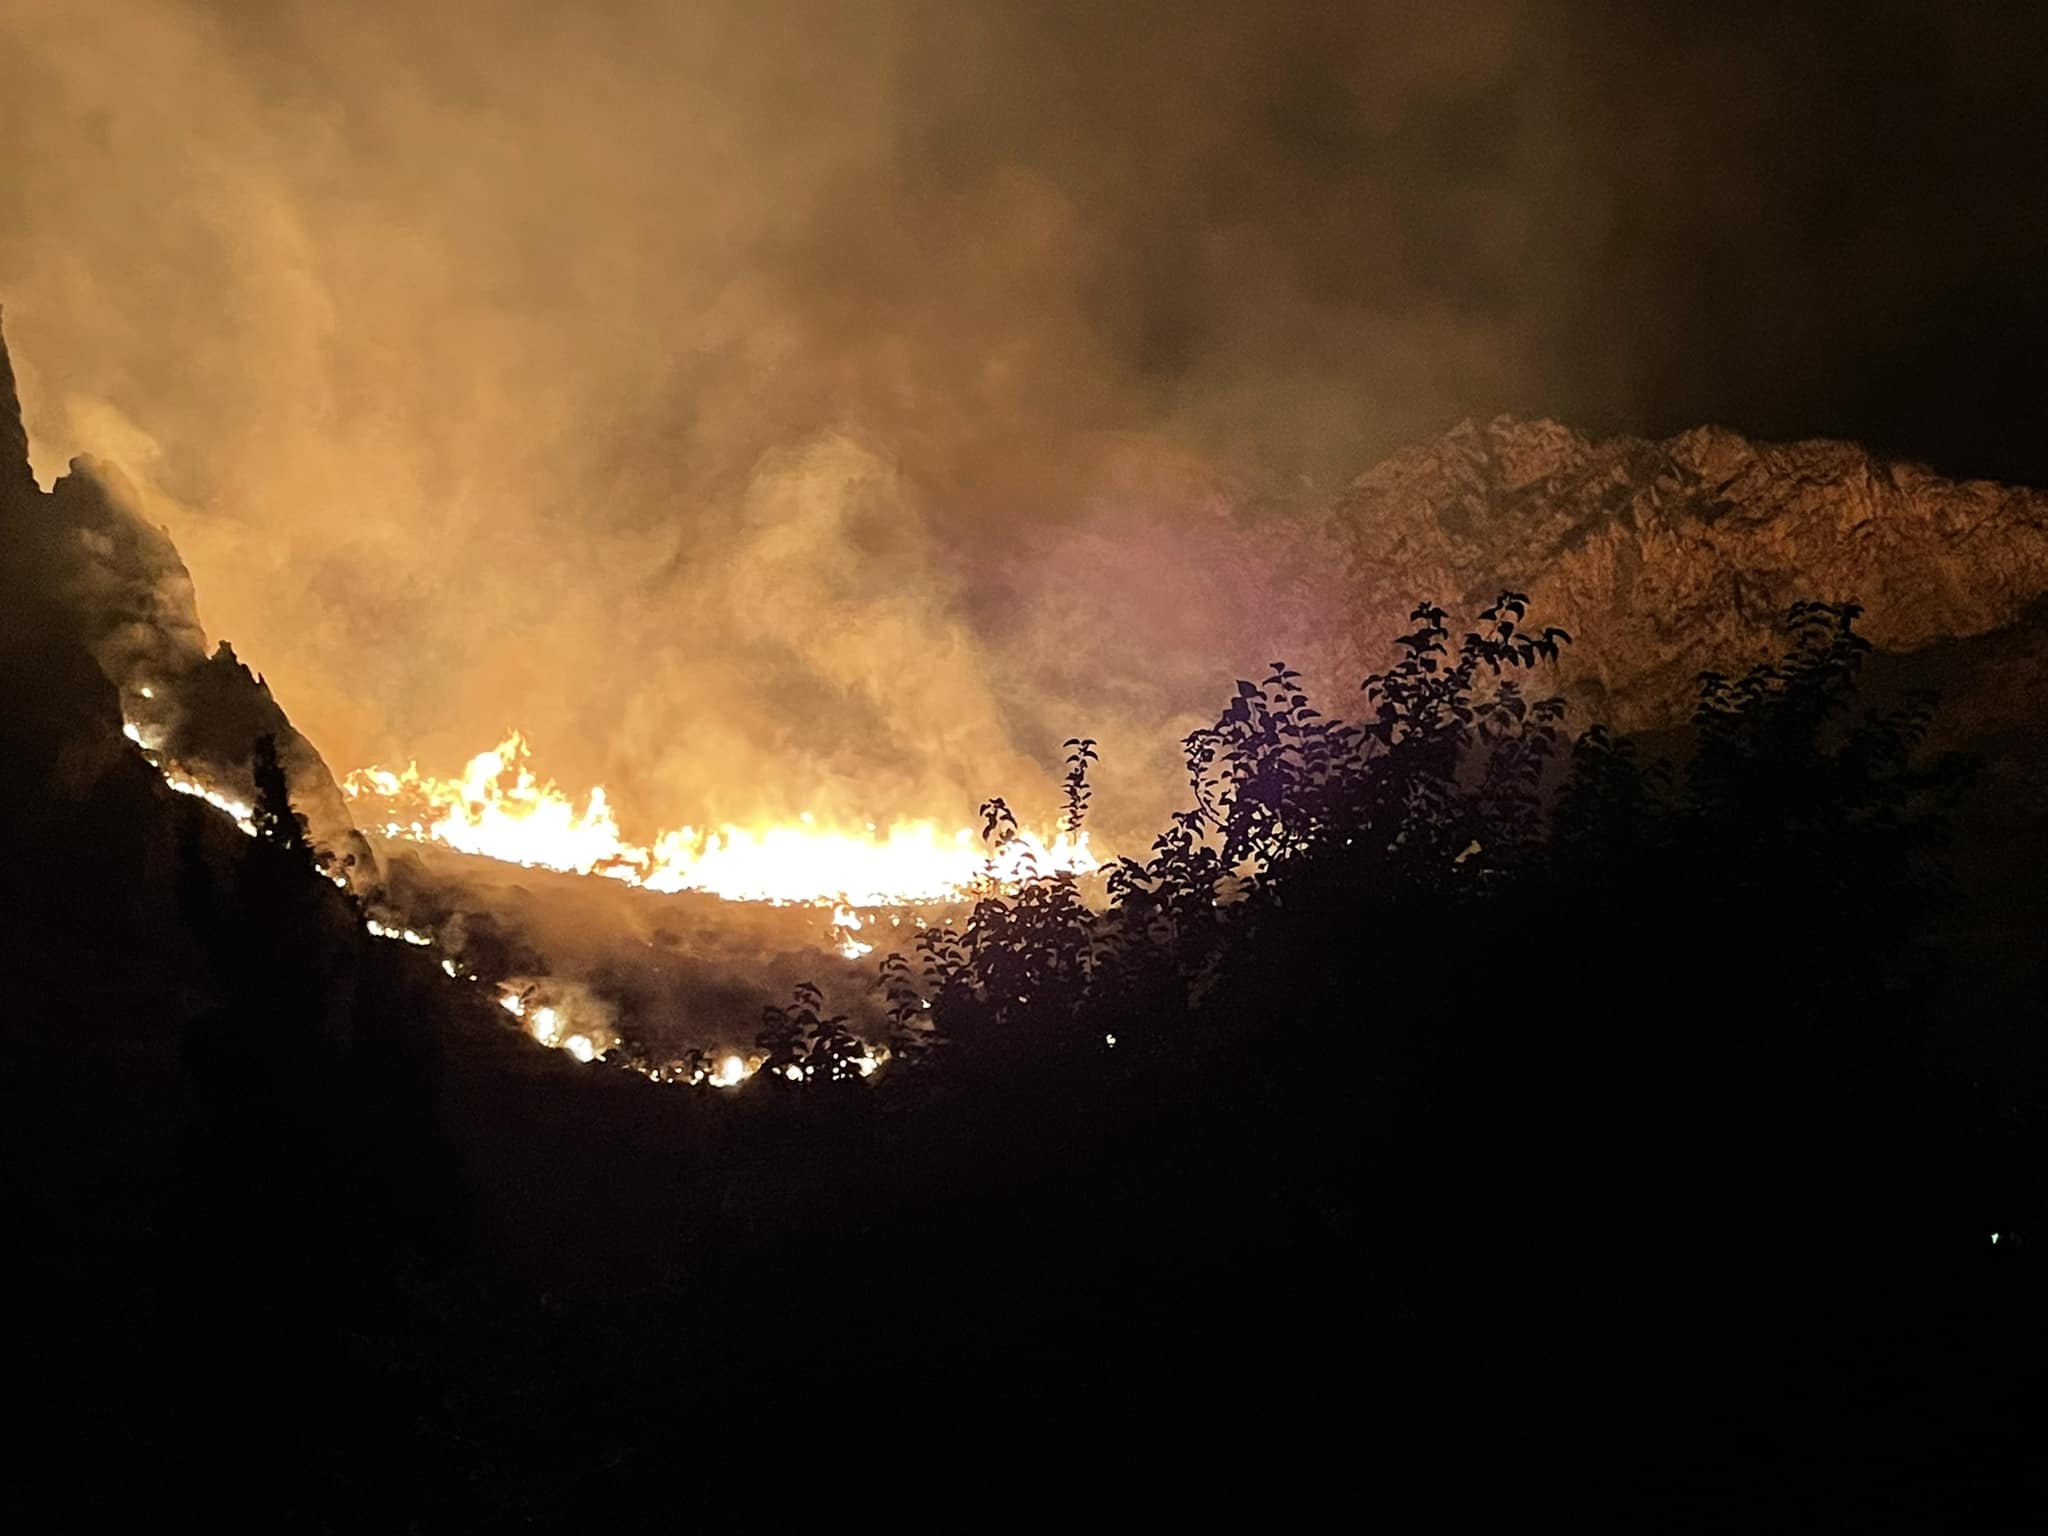 Notte di fuoco a Capaci, maxi incendio alle pendici di monte Raffo Rosso: la rabbia del sindaco